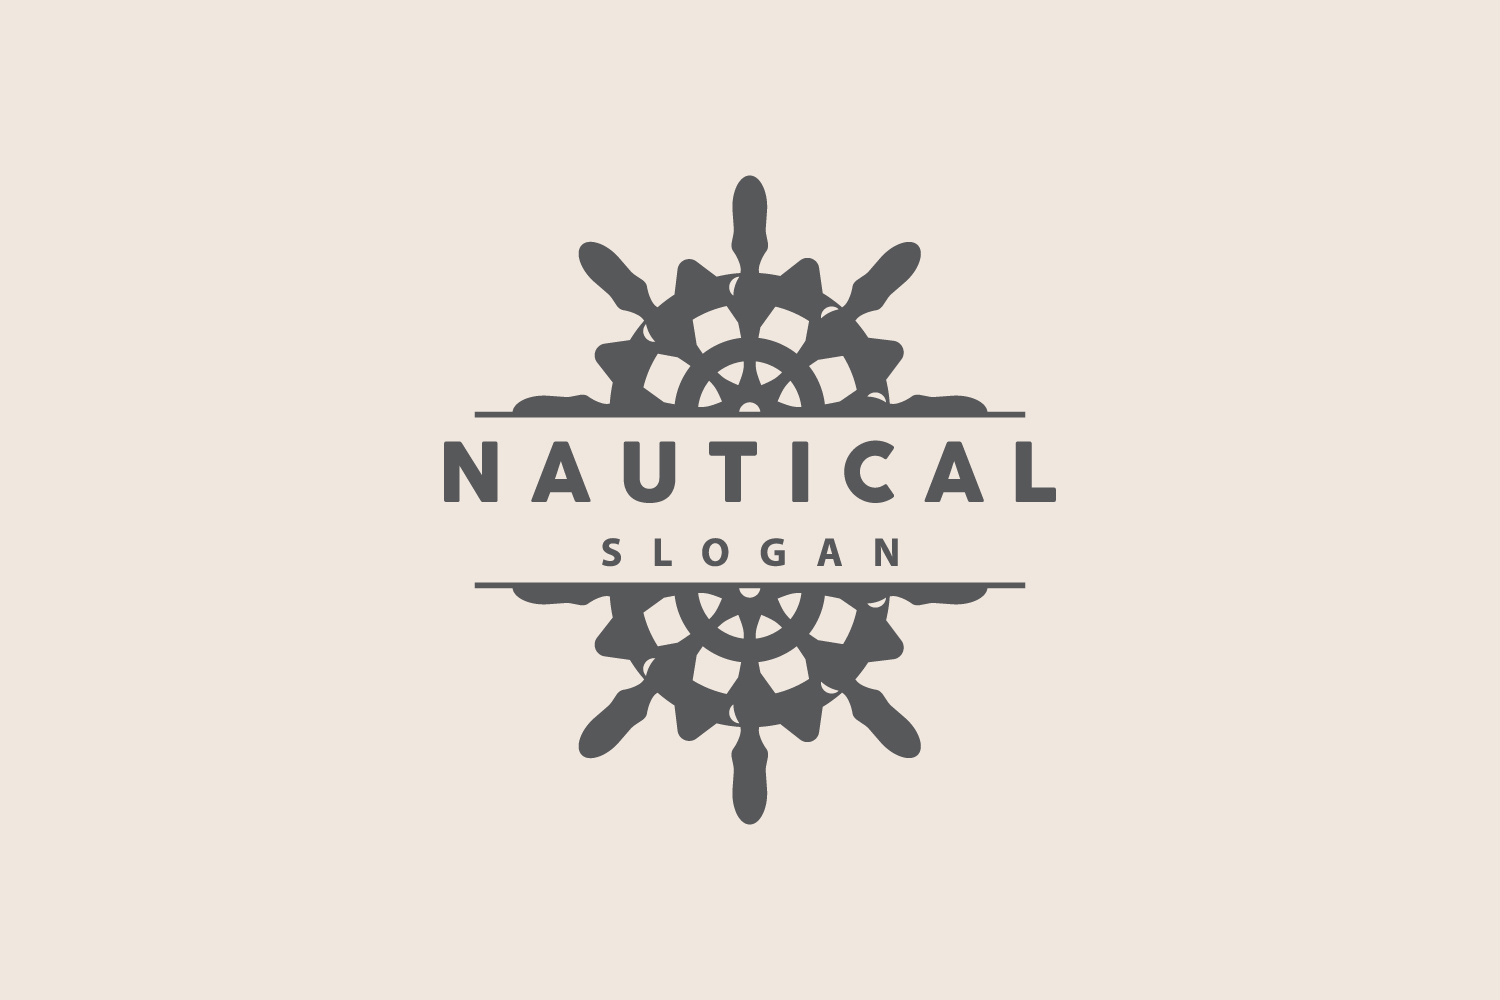 Ship Logo Nautical Maritime Vector SimpleV2